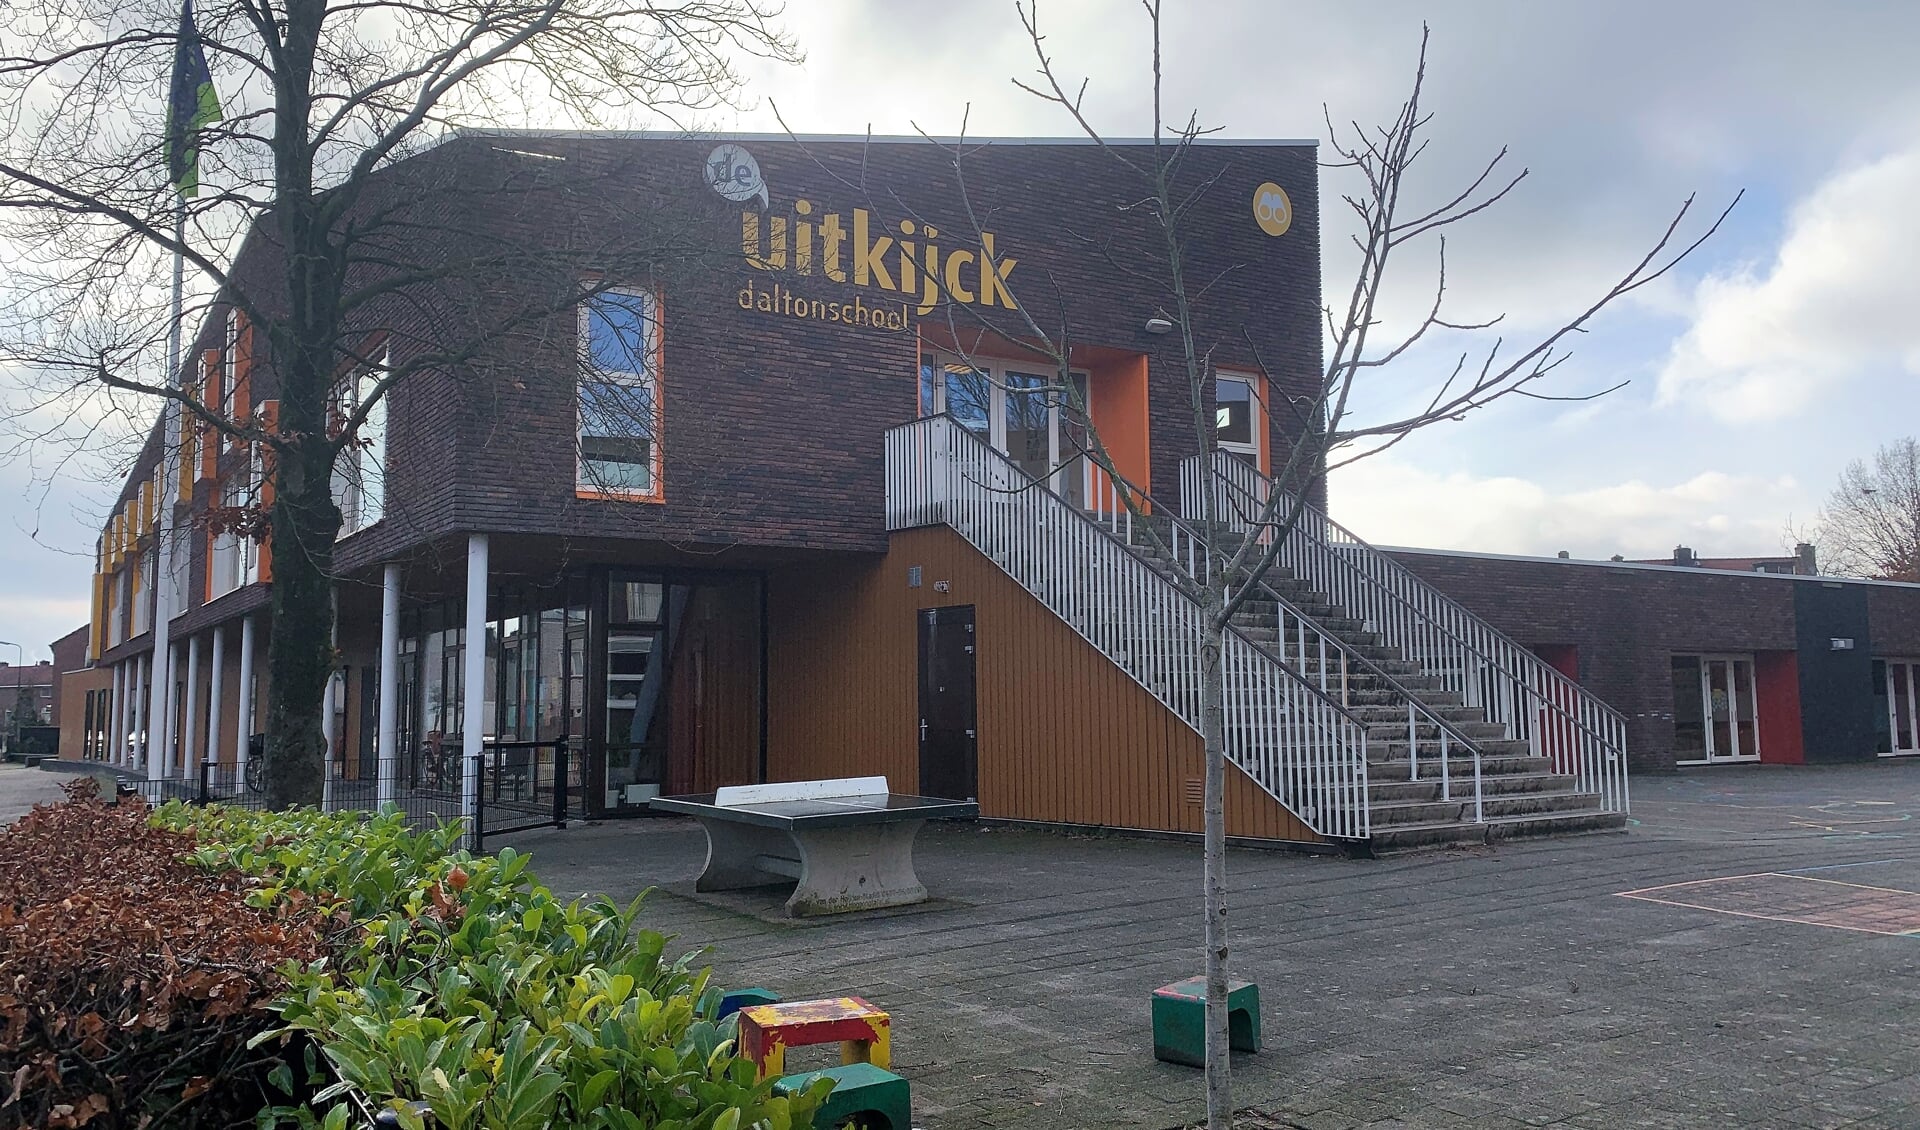 Basisschool De Uitkijck. 